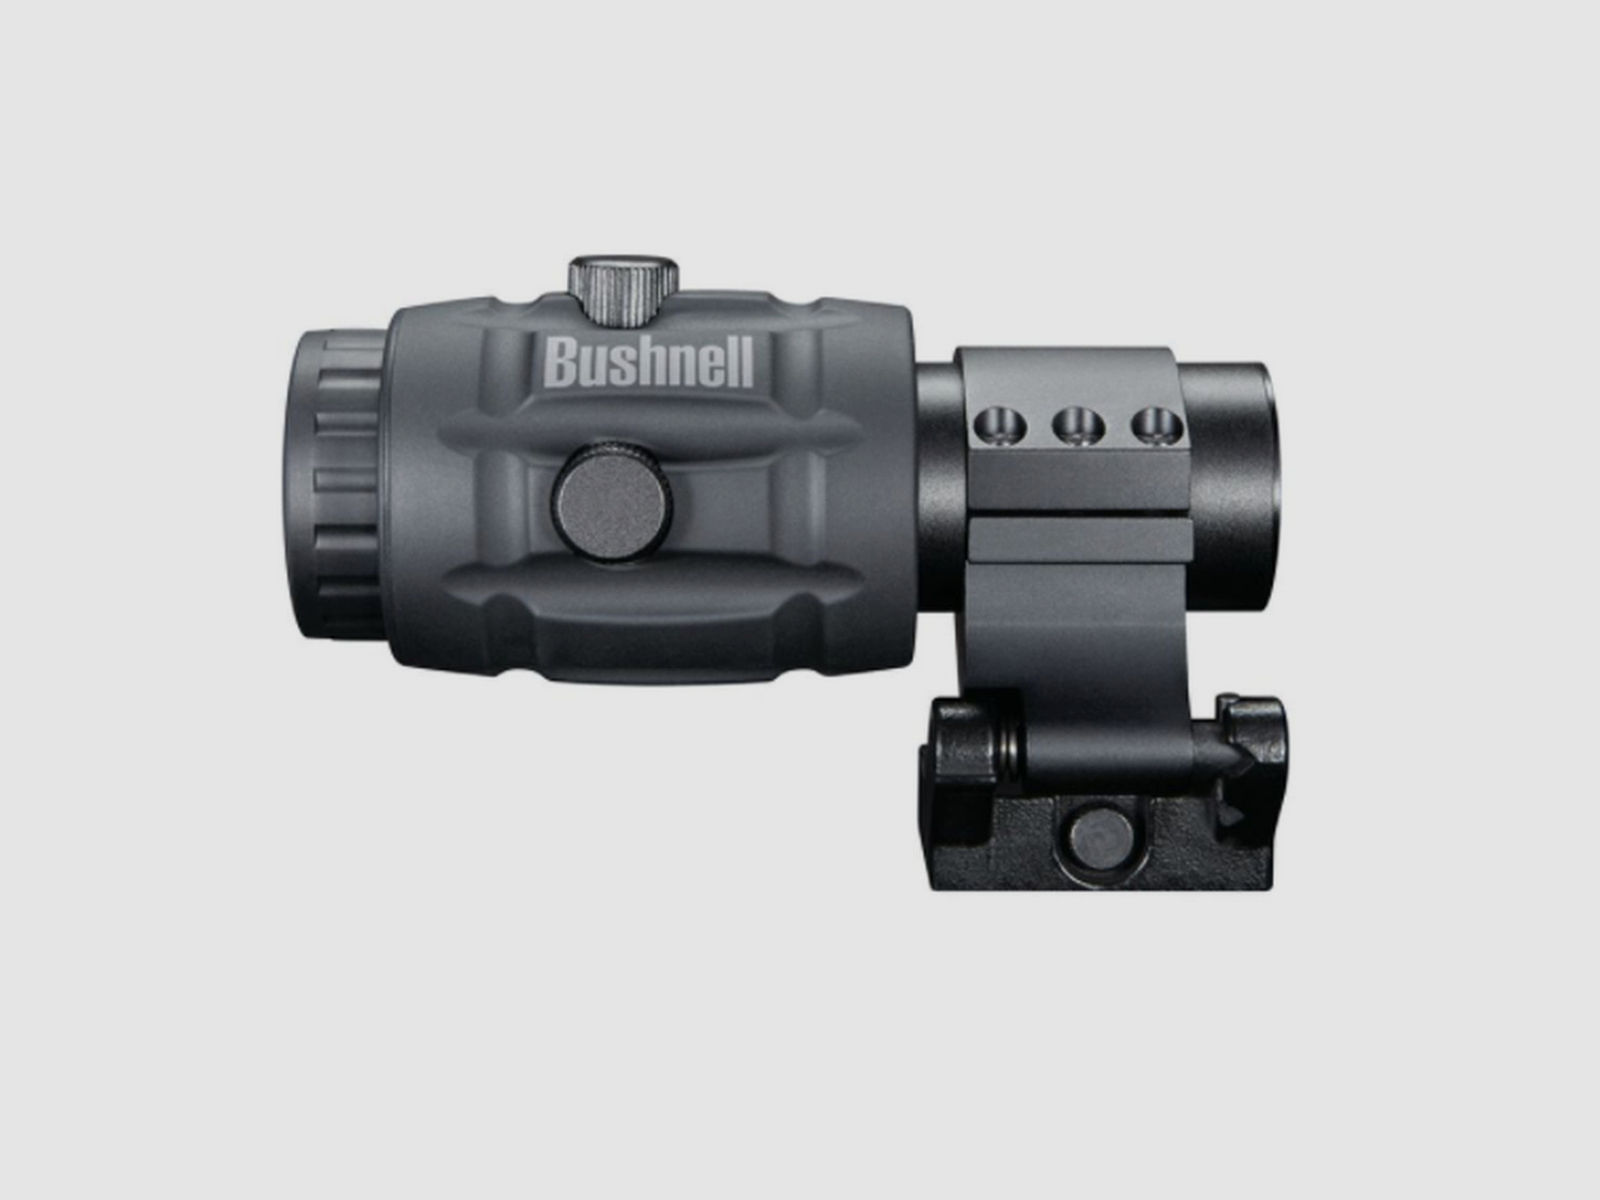 Bushnell Transition 3x Magnifier / Vergrößerungsmodul